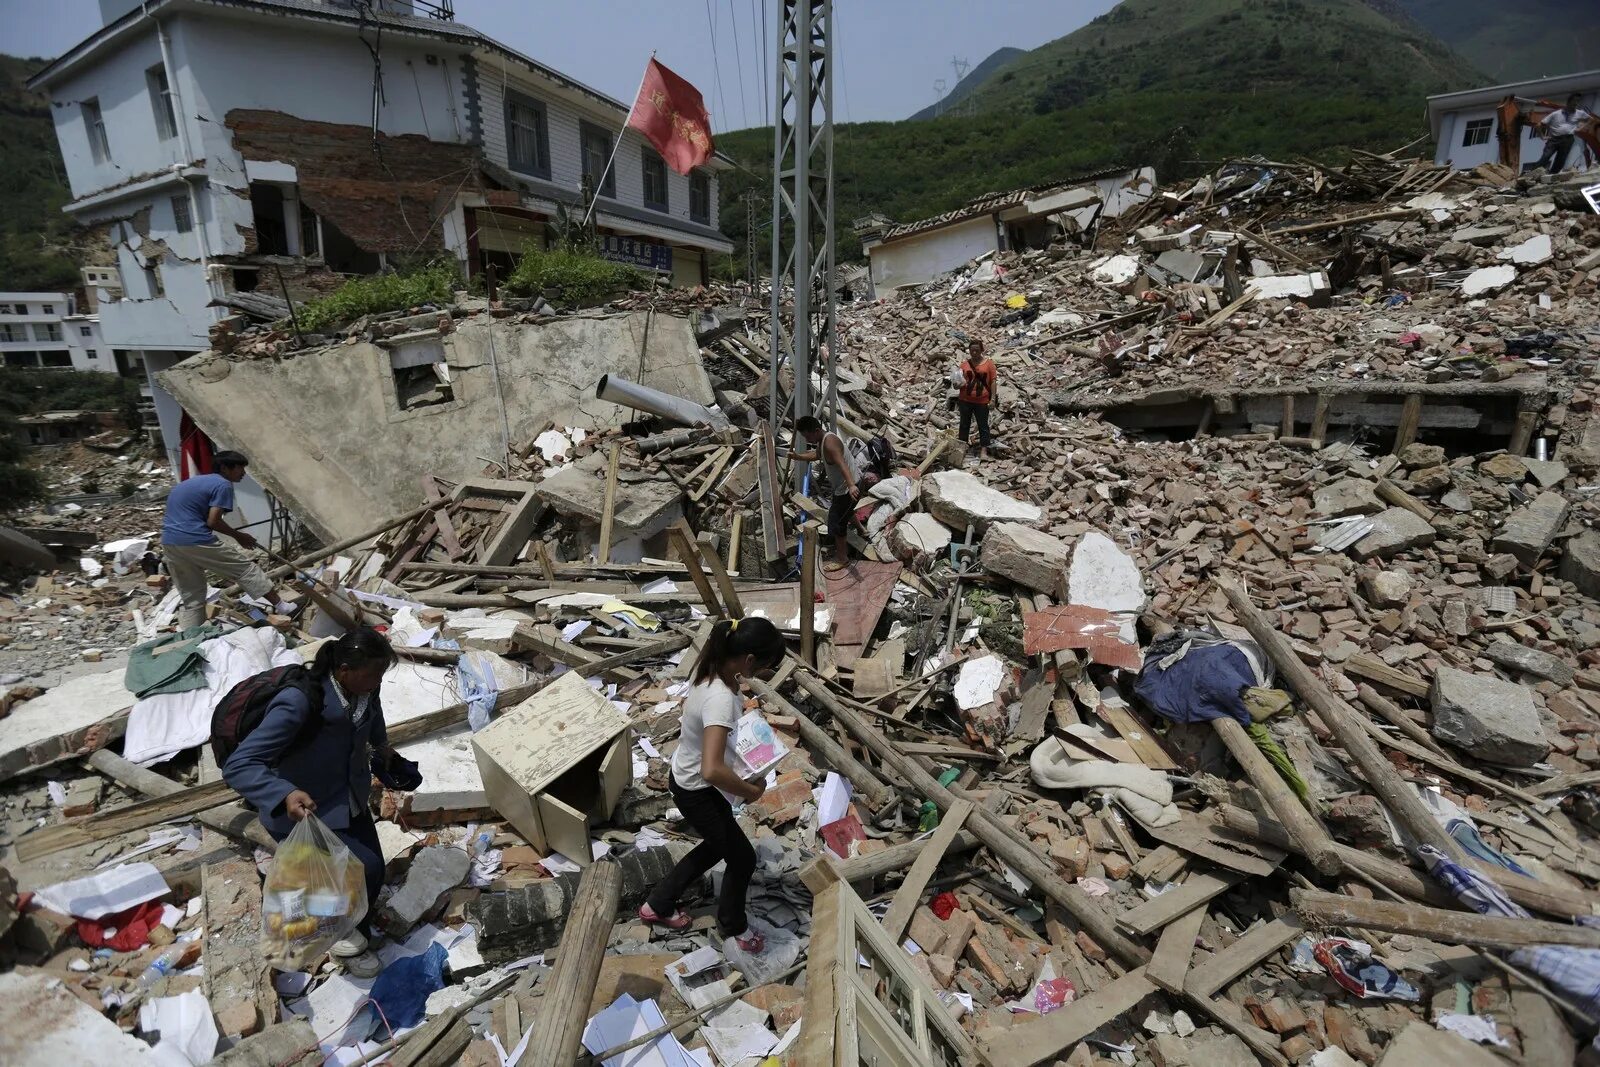 Землетрясение август. 3 Августа 2014 года Китай землетрясение. Землетрясение в Китае 2014. Китай, 3 августа 2014 года: 600 погибших. Землетрясение в Китае 2011.